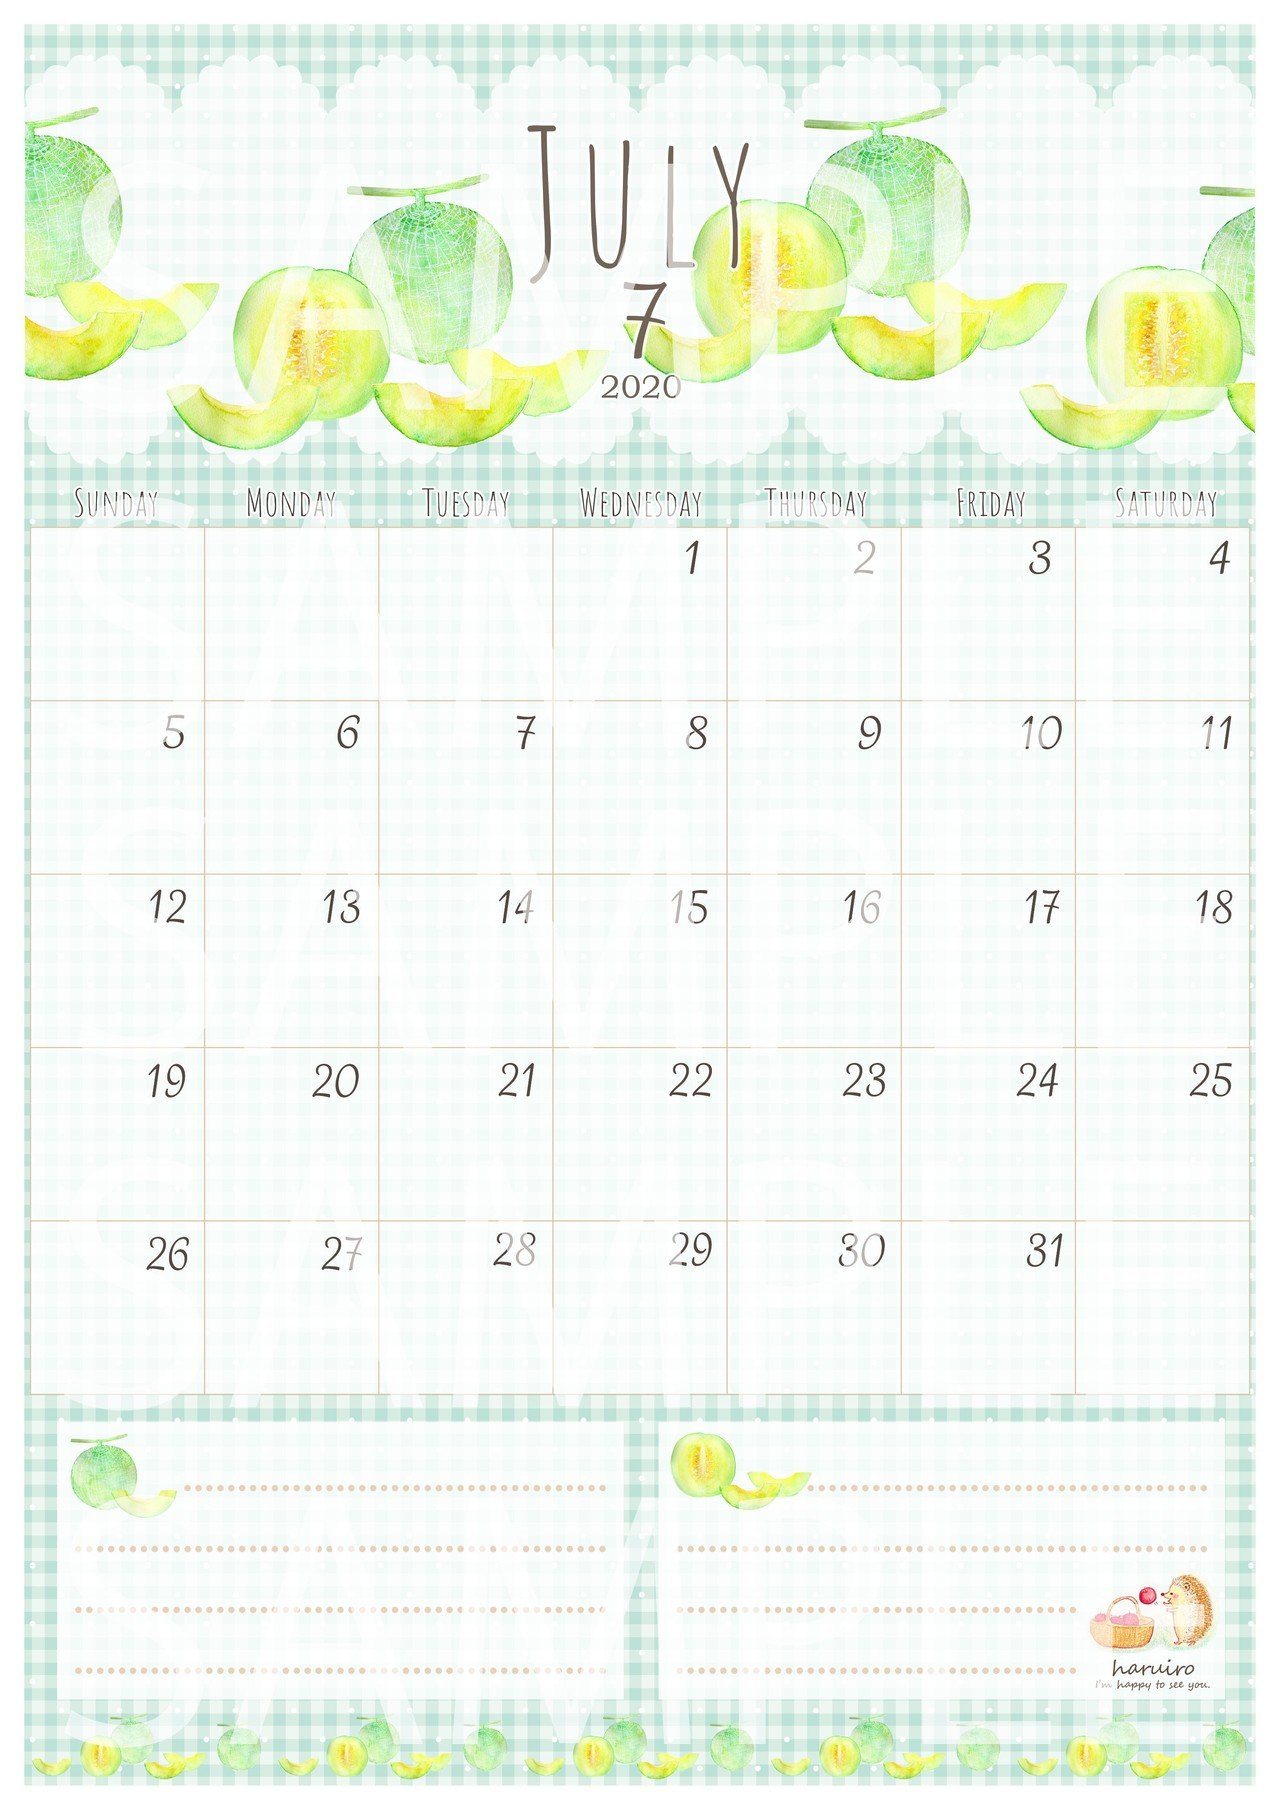 ７月のカレンダーとto Do リスト Haruiro Note